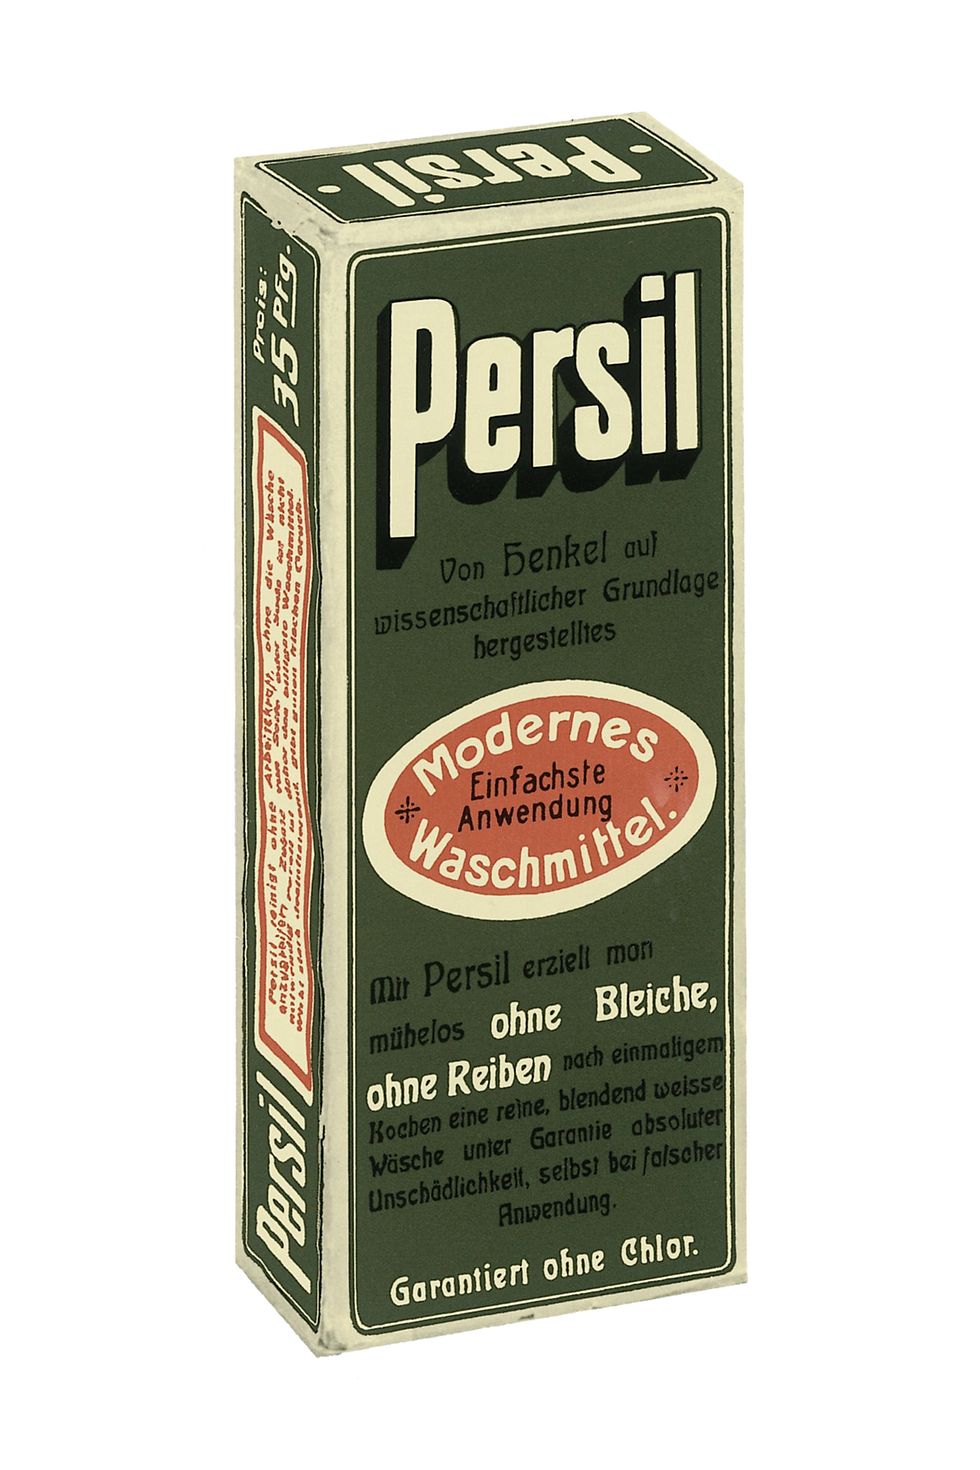 Persil 1907 